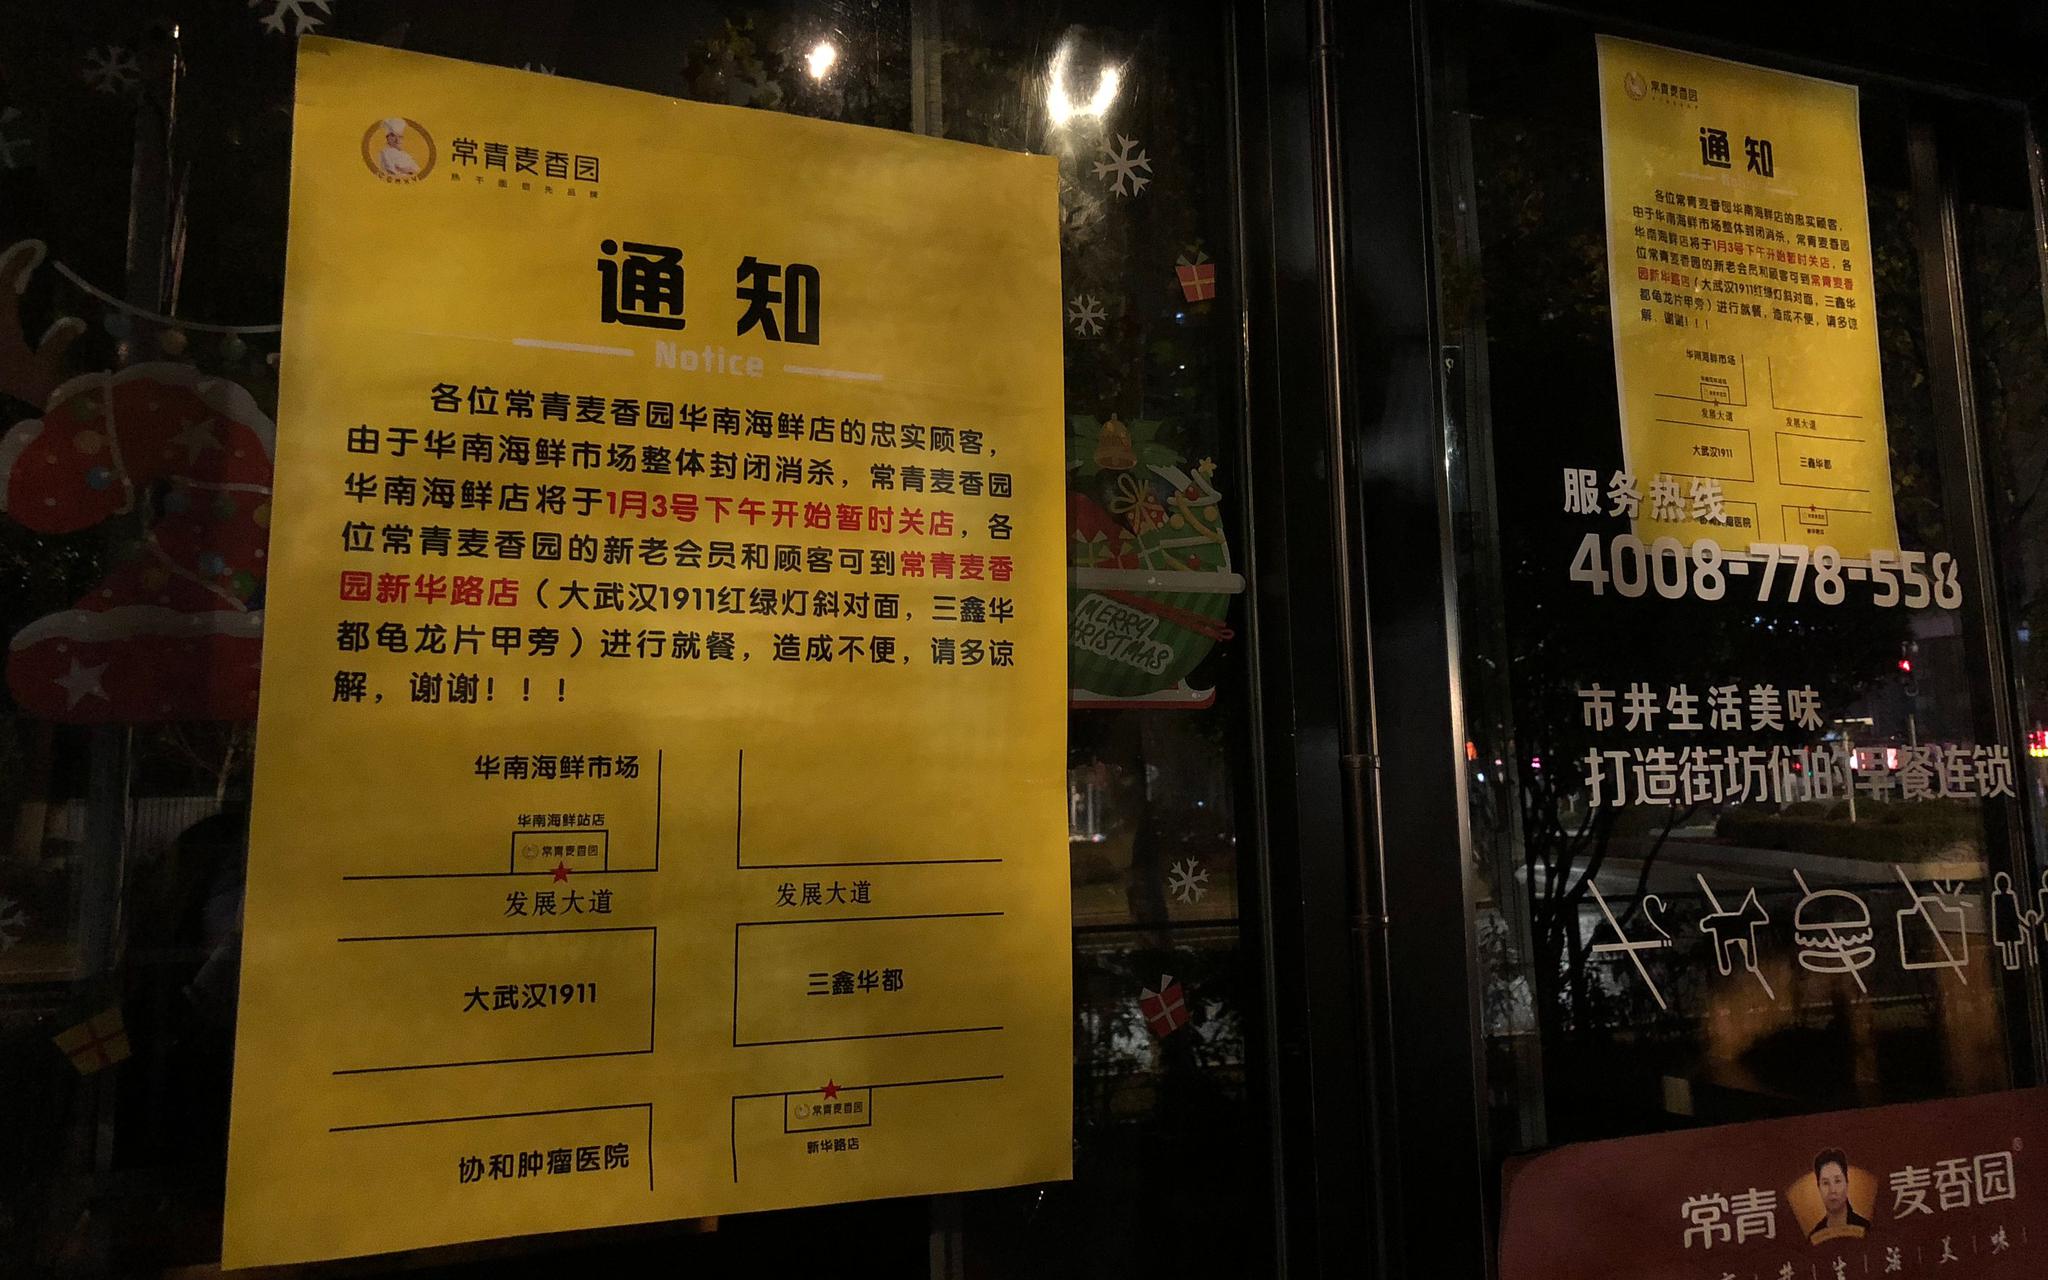  1月20日晚，记者探访发现，武汉华南海鲜市场附近的餐饮店已贴出闭店通知。新京报记者 吴娇颖 摄